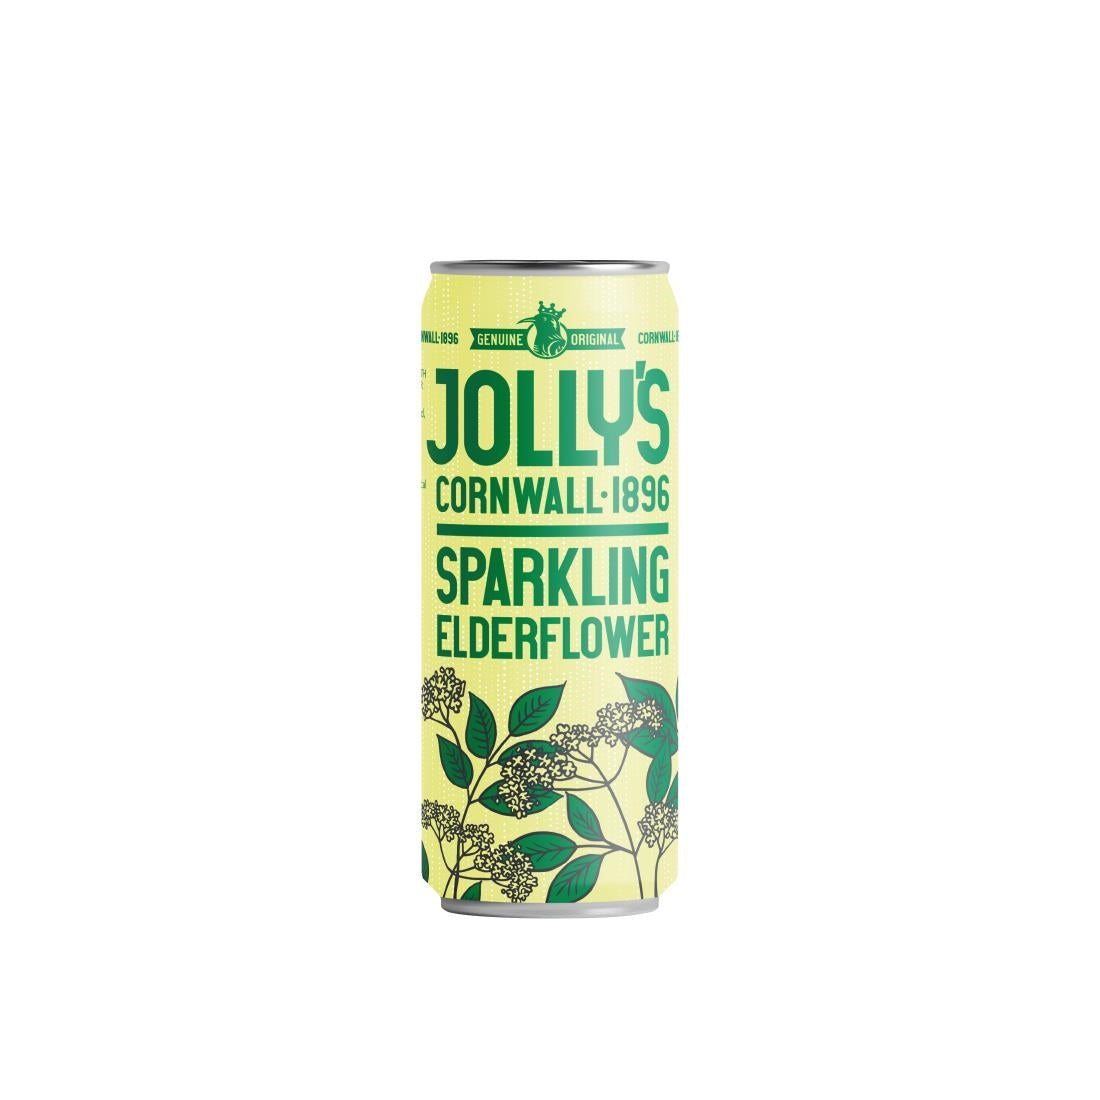 HN945 Jolly's Cornish Sparkling Elderflower Cans 250ml (Pack of 24)